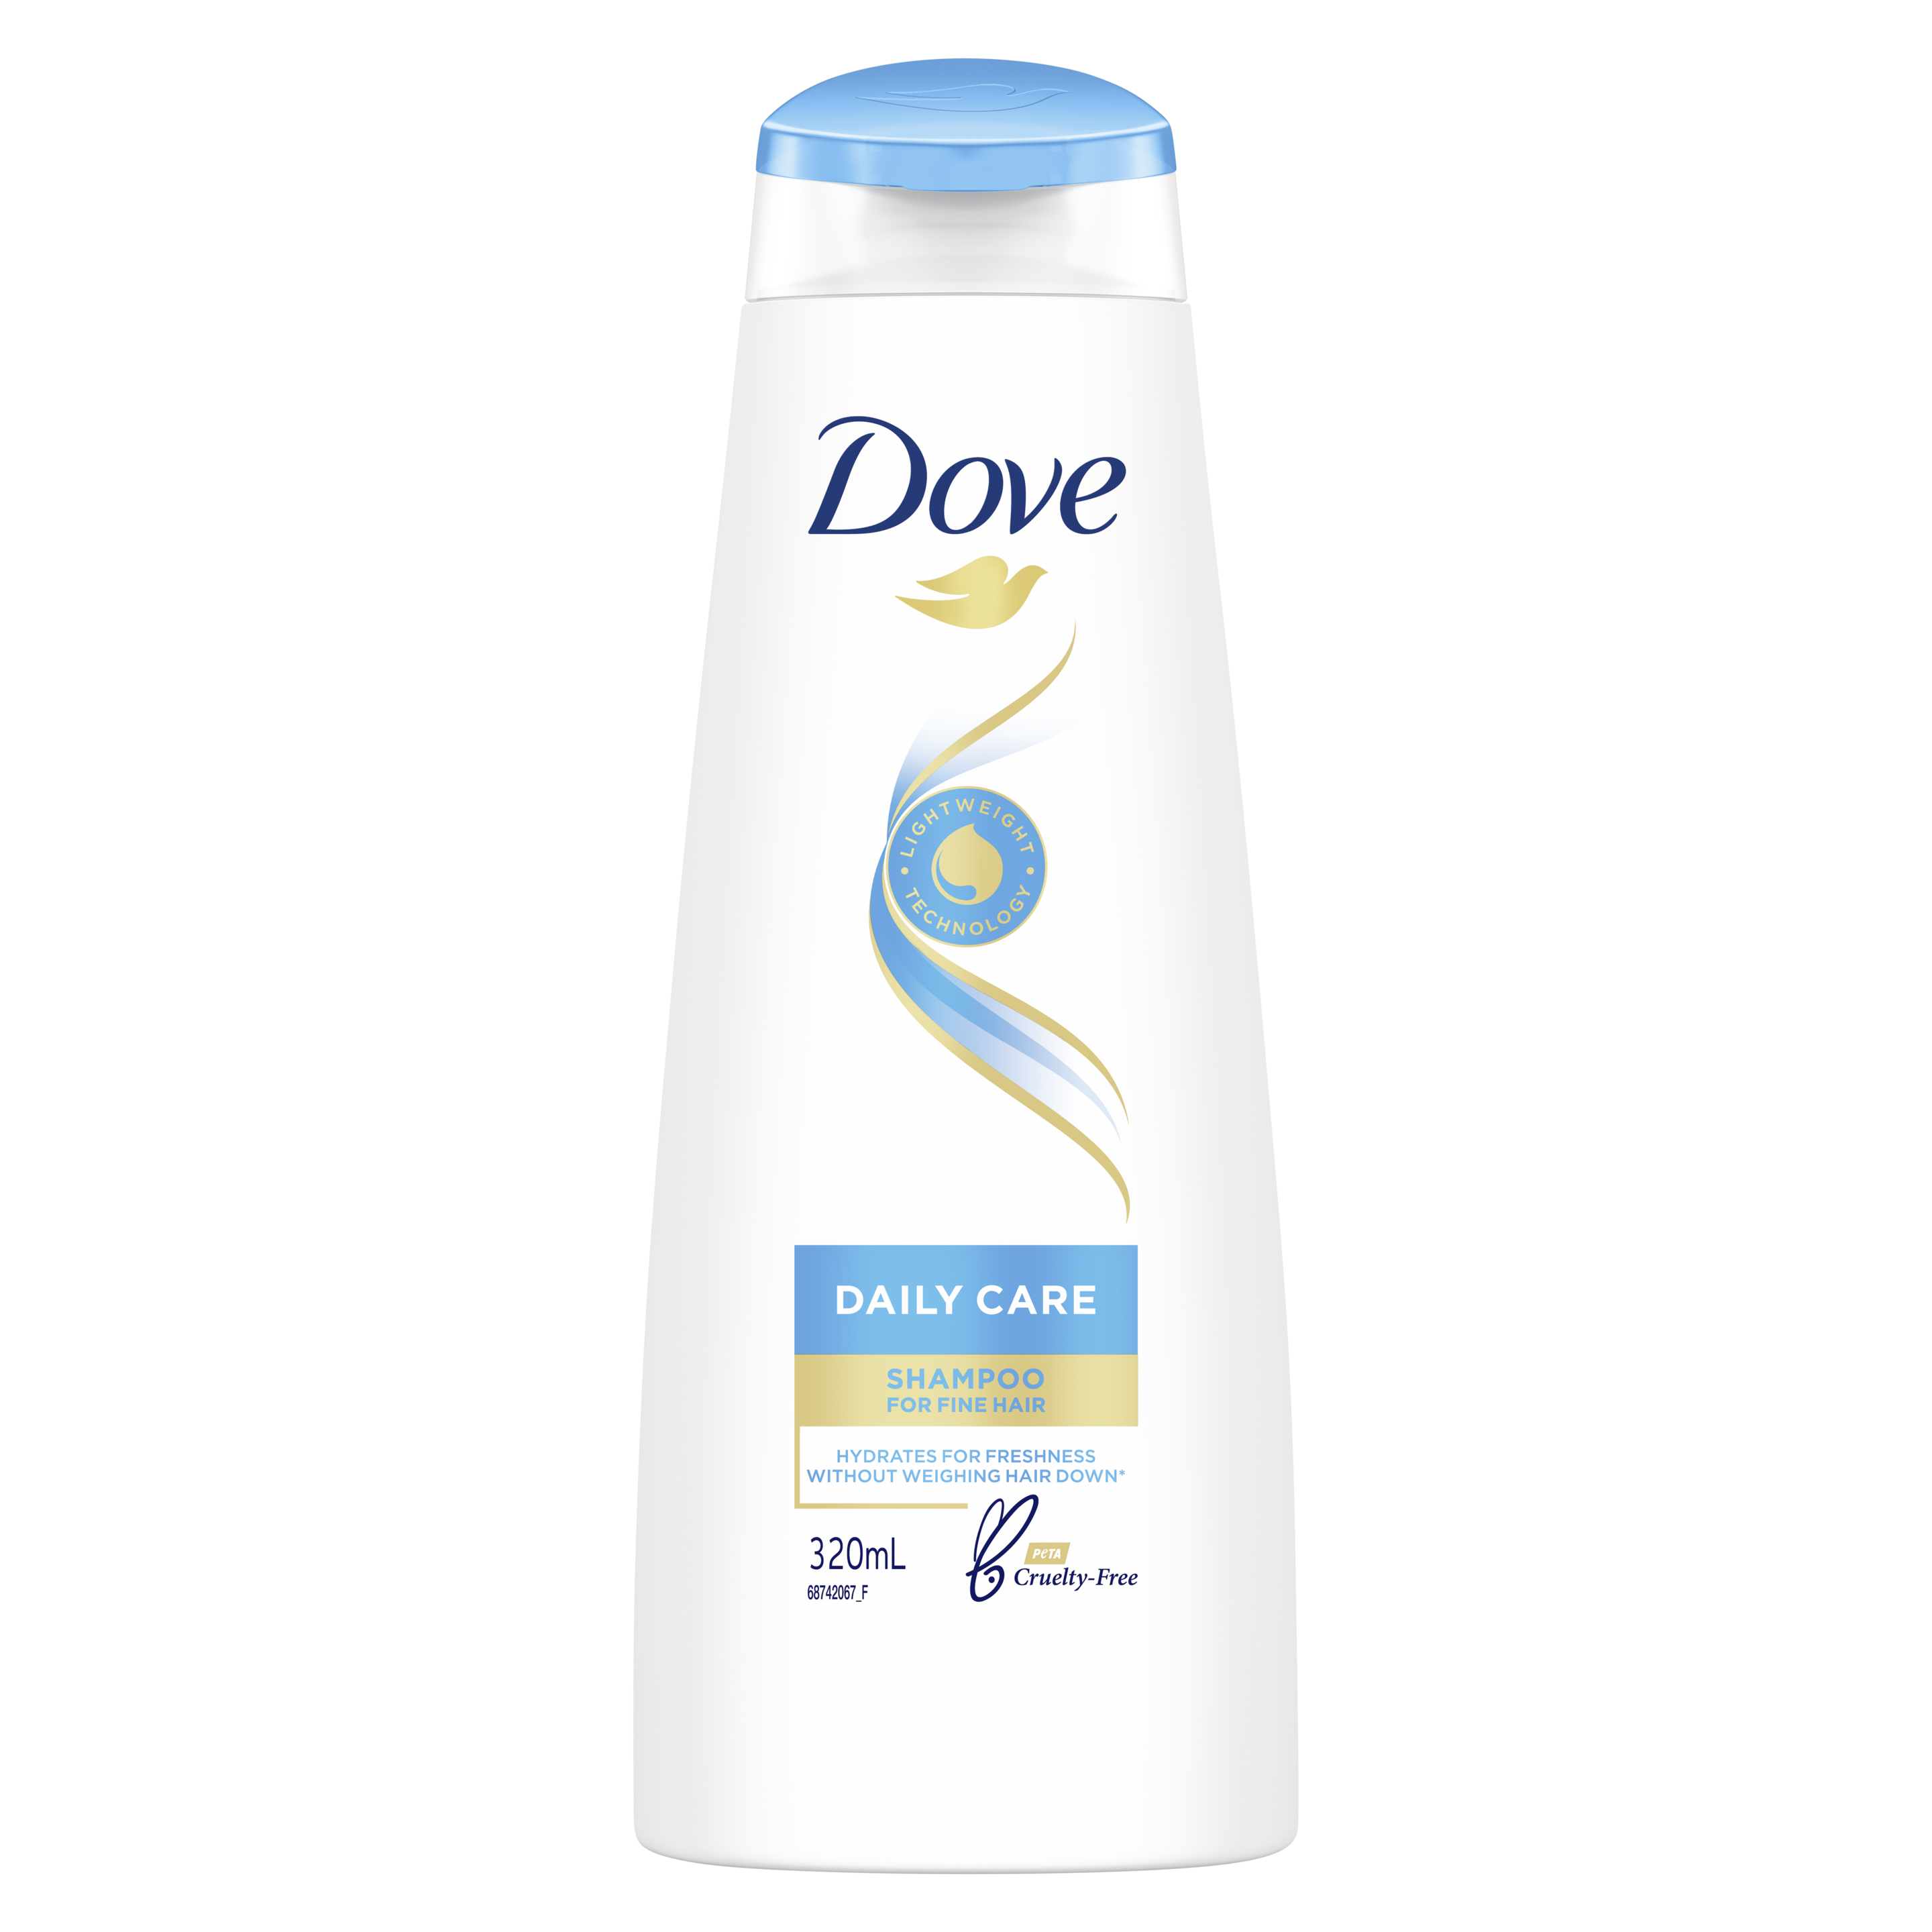 Dove Daily Care Shampoo 320ml Text